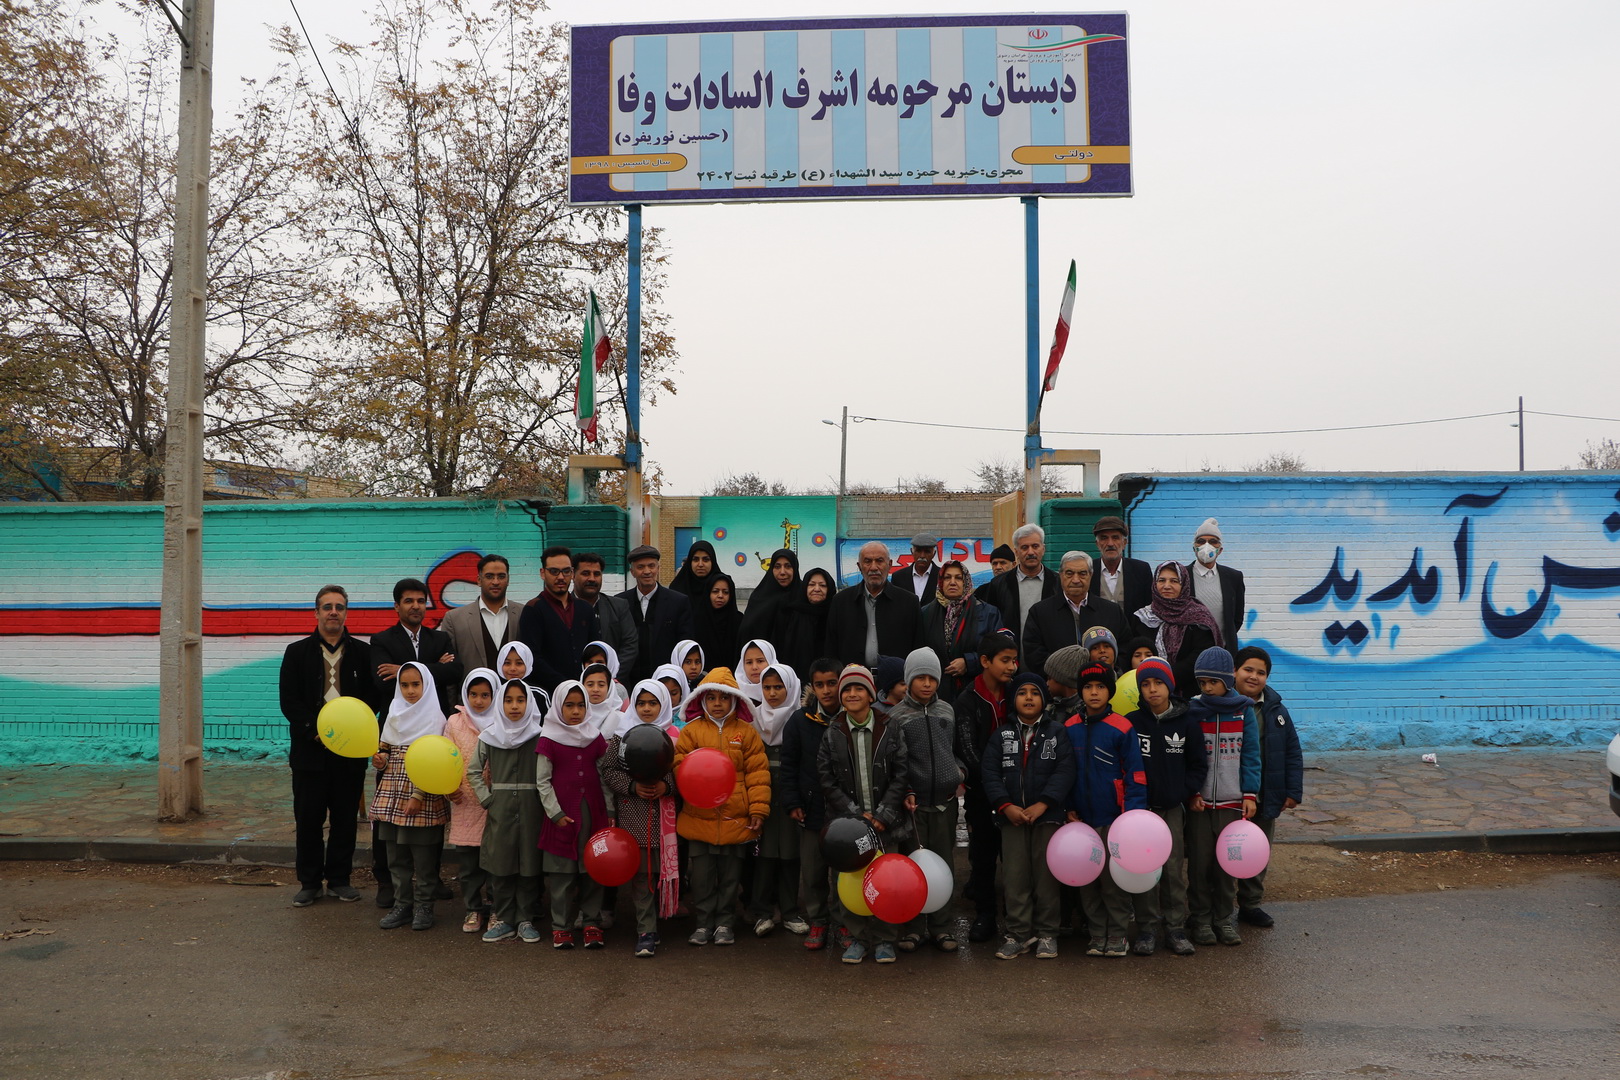 افتتاحیه مدرسه اشرف السادات وفا - روستای چلقی - حاج حسین نوریفرد - خیریه حمزه سیدالشهدا طرقبه